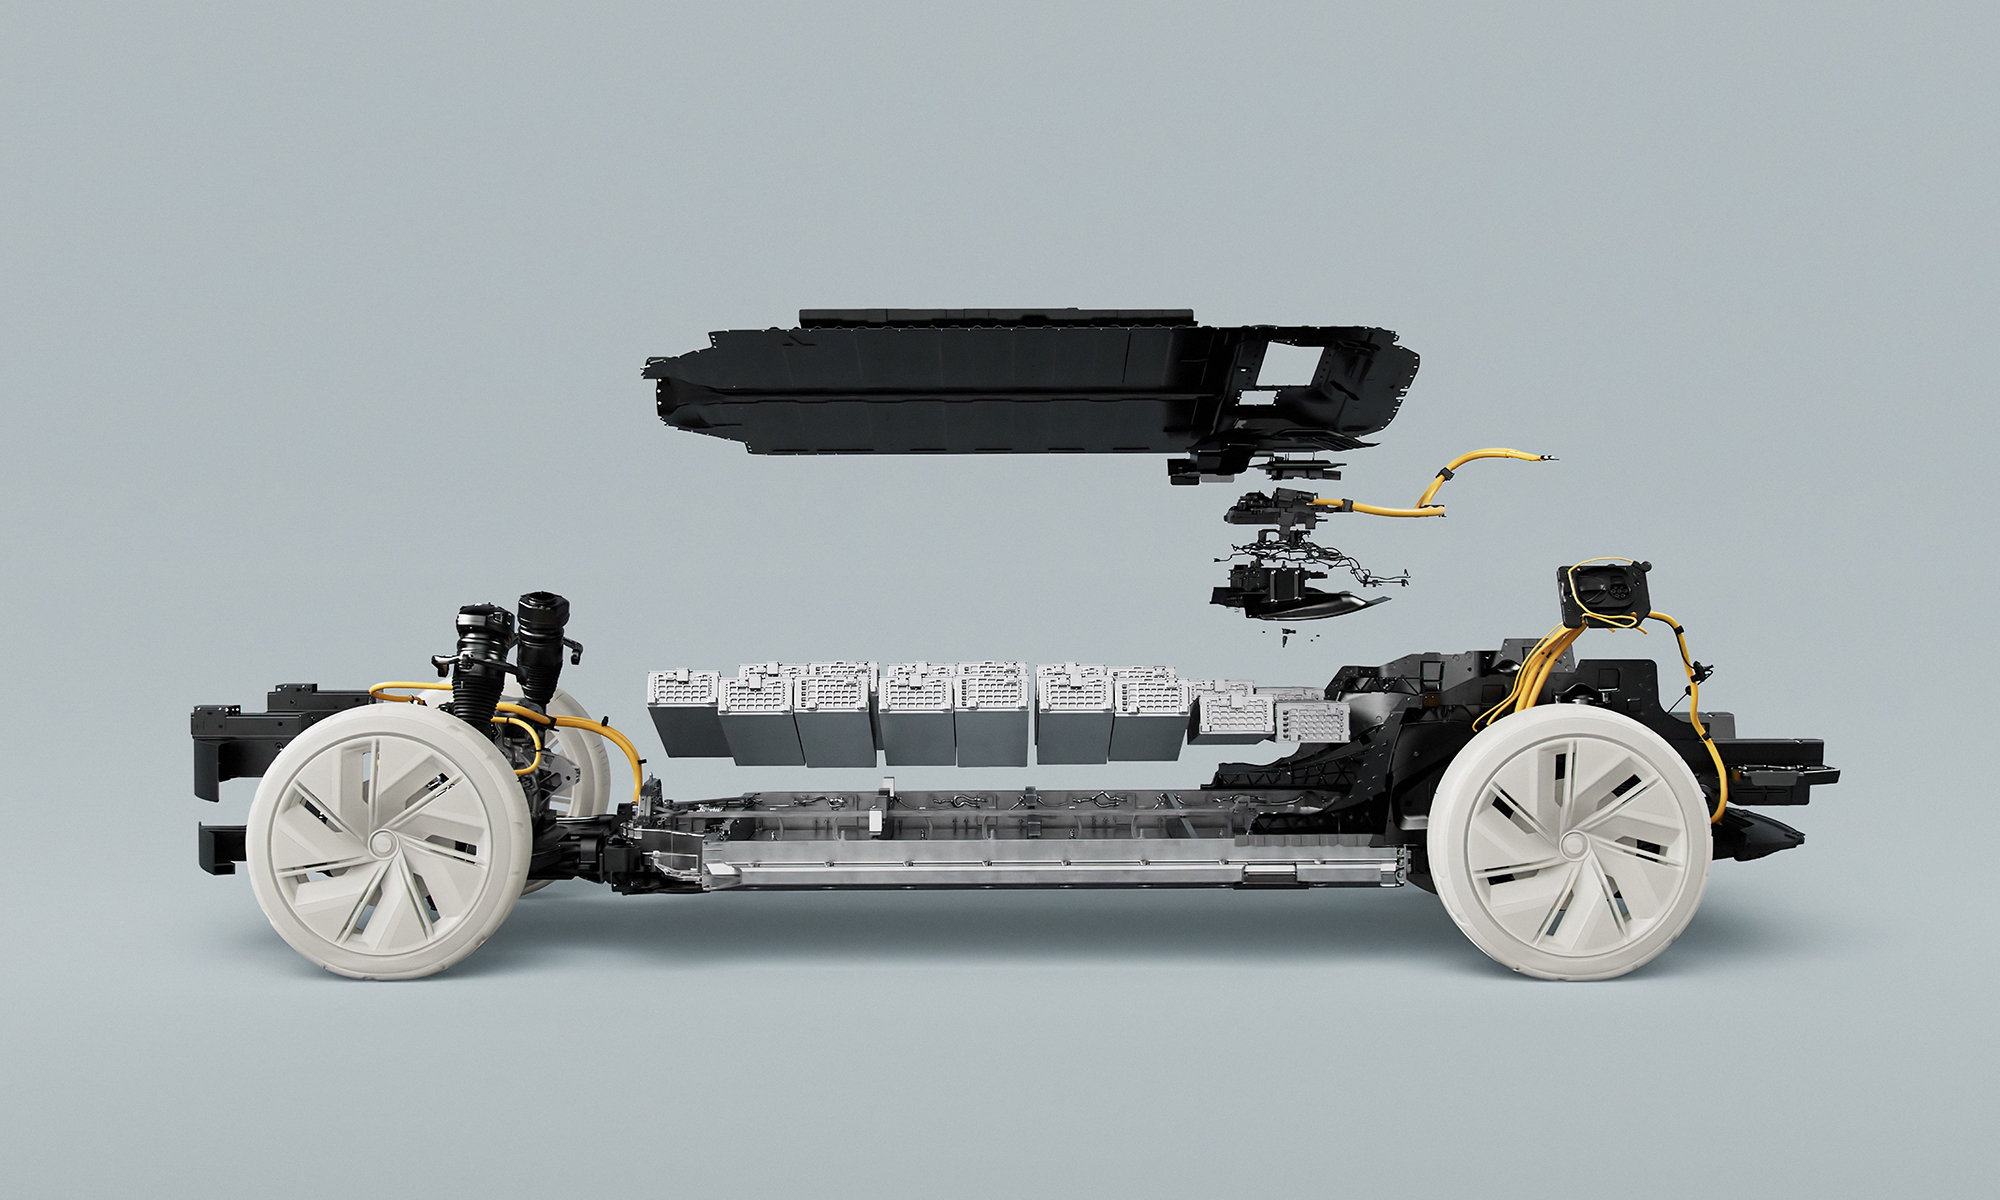 Volvo quiere que sus coches eléctricos tengan baterías con materiales clave reciclados.